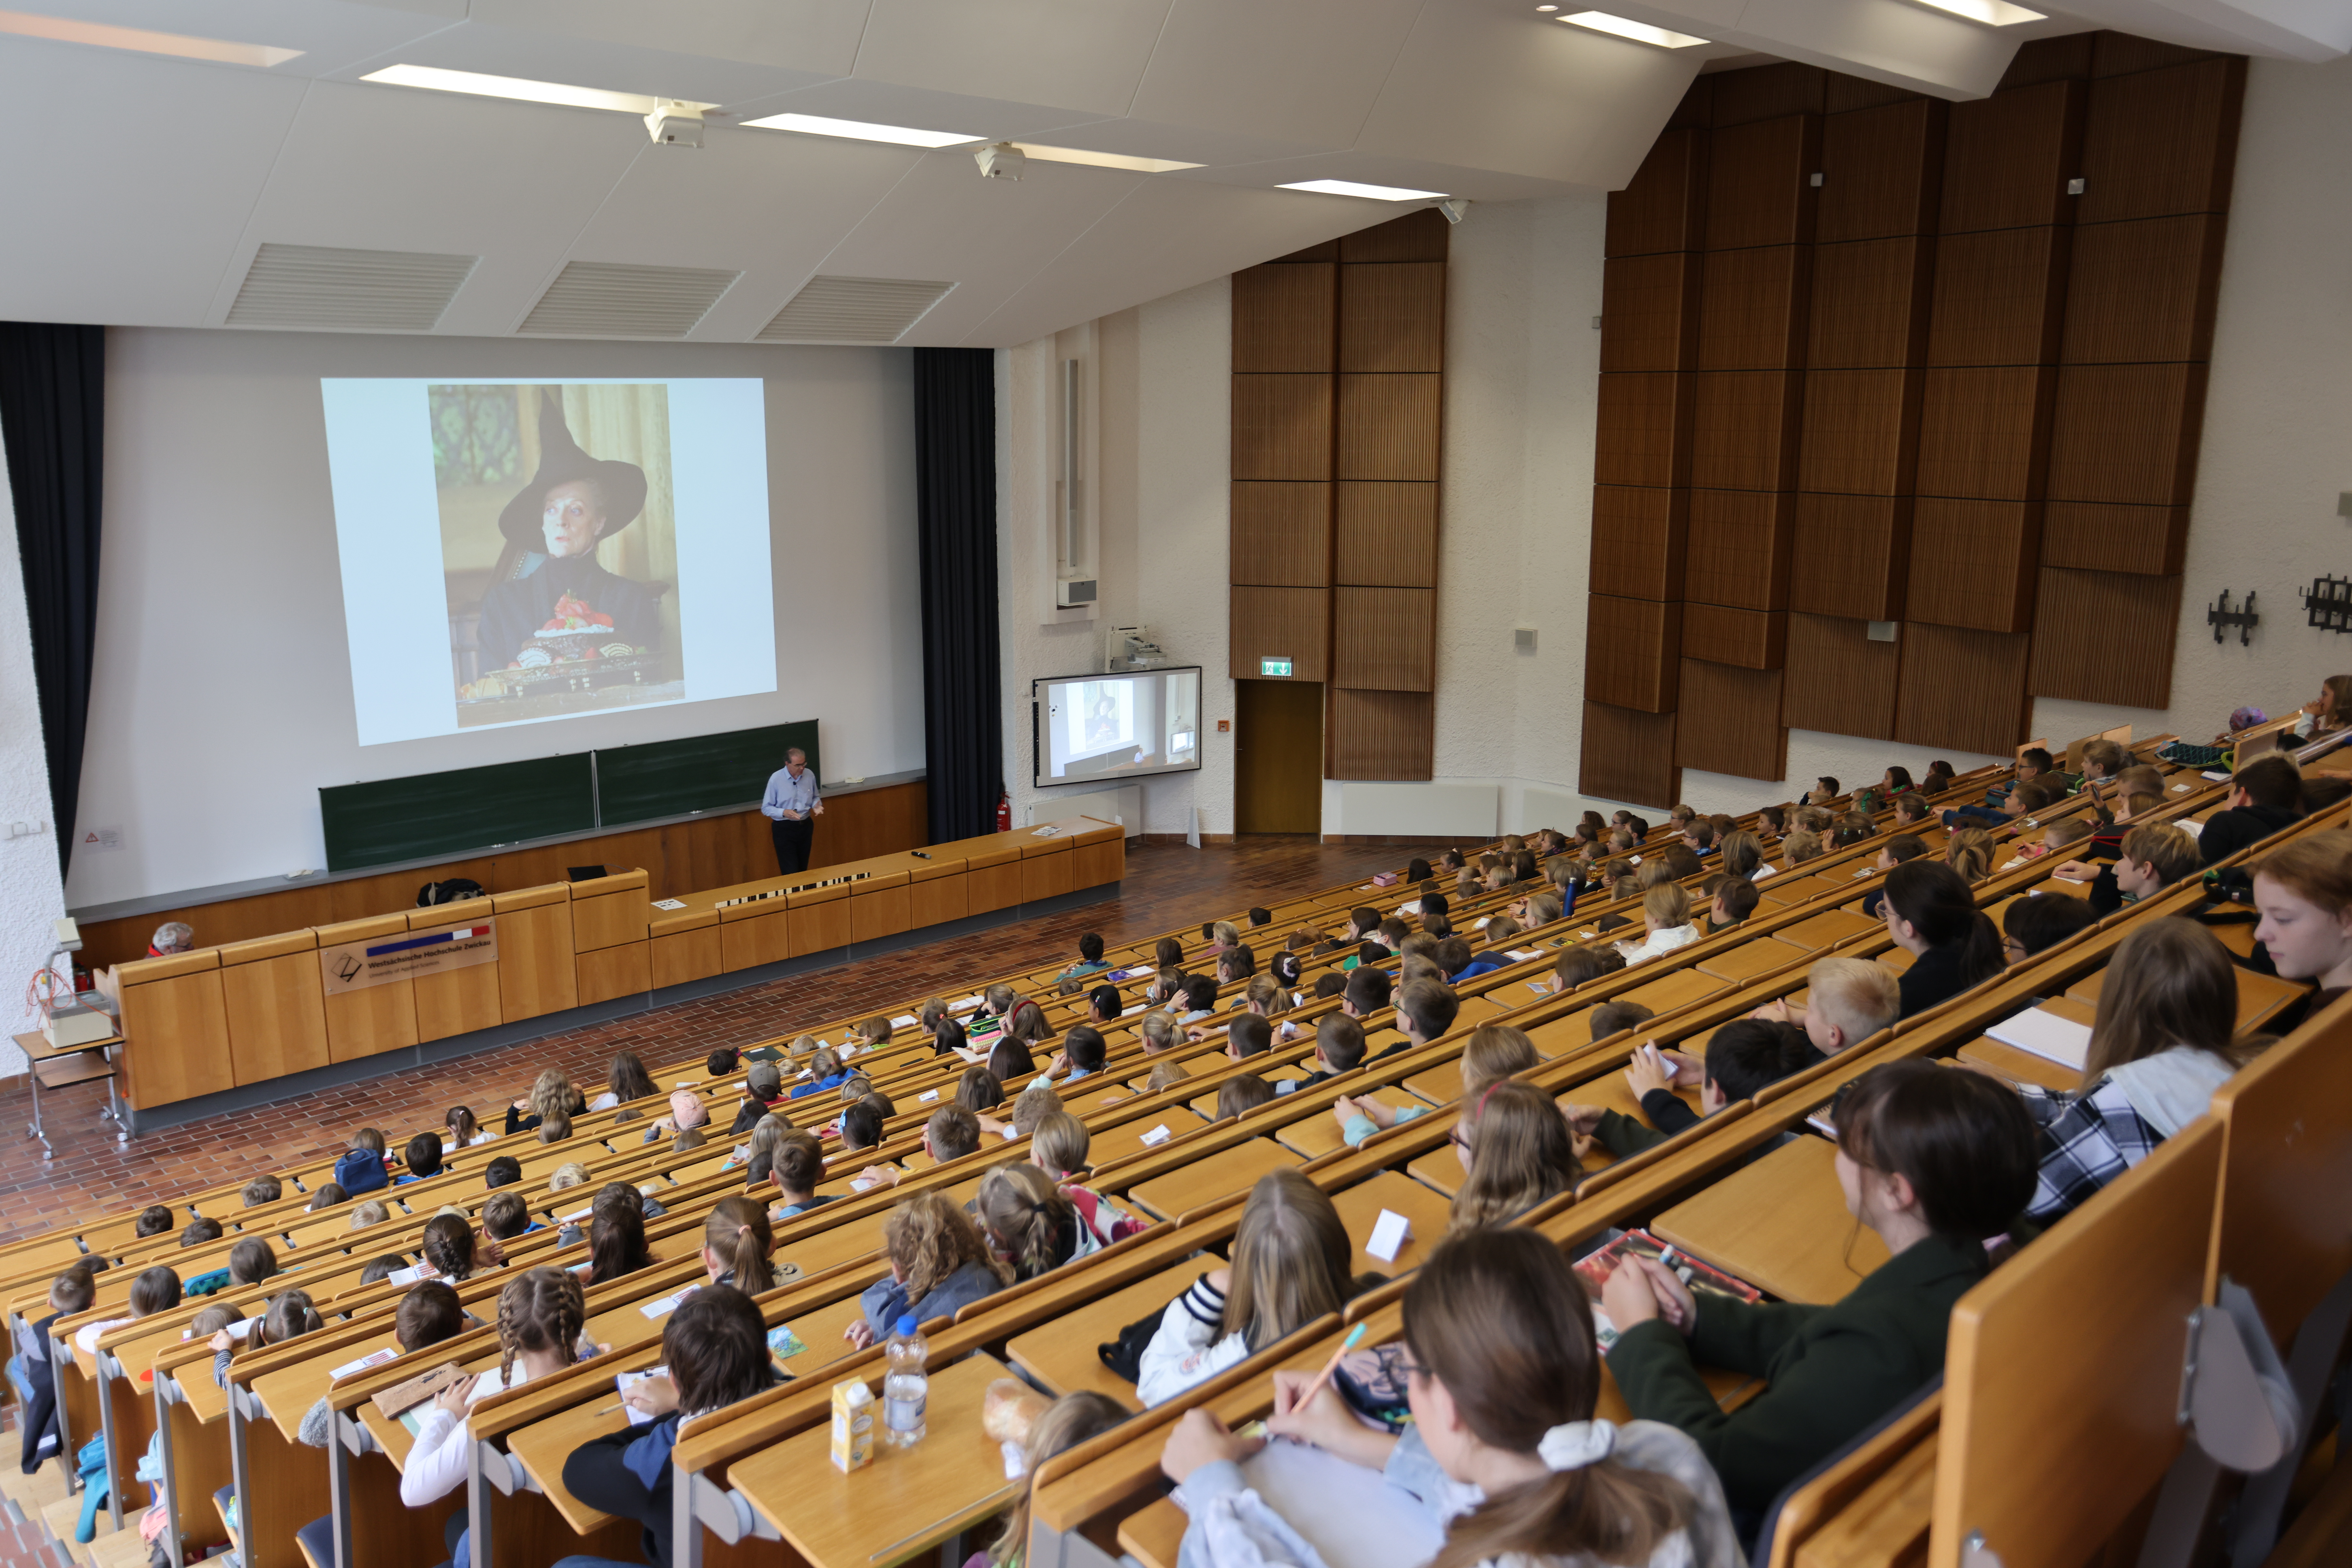 Foto: Hörsaal 1 der WHZ, 208 Kinder verfolgten die Kinderuni-Vorlesung von Prof. Ralf Laue